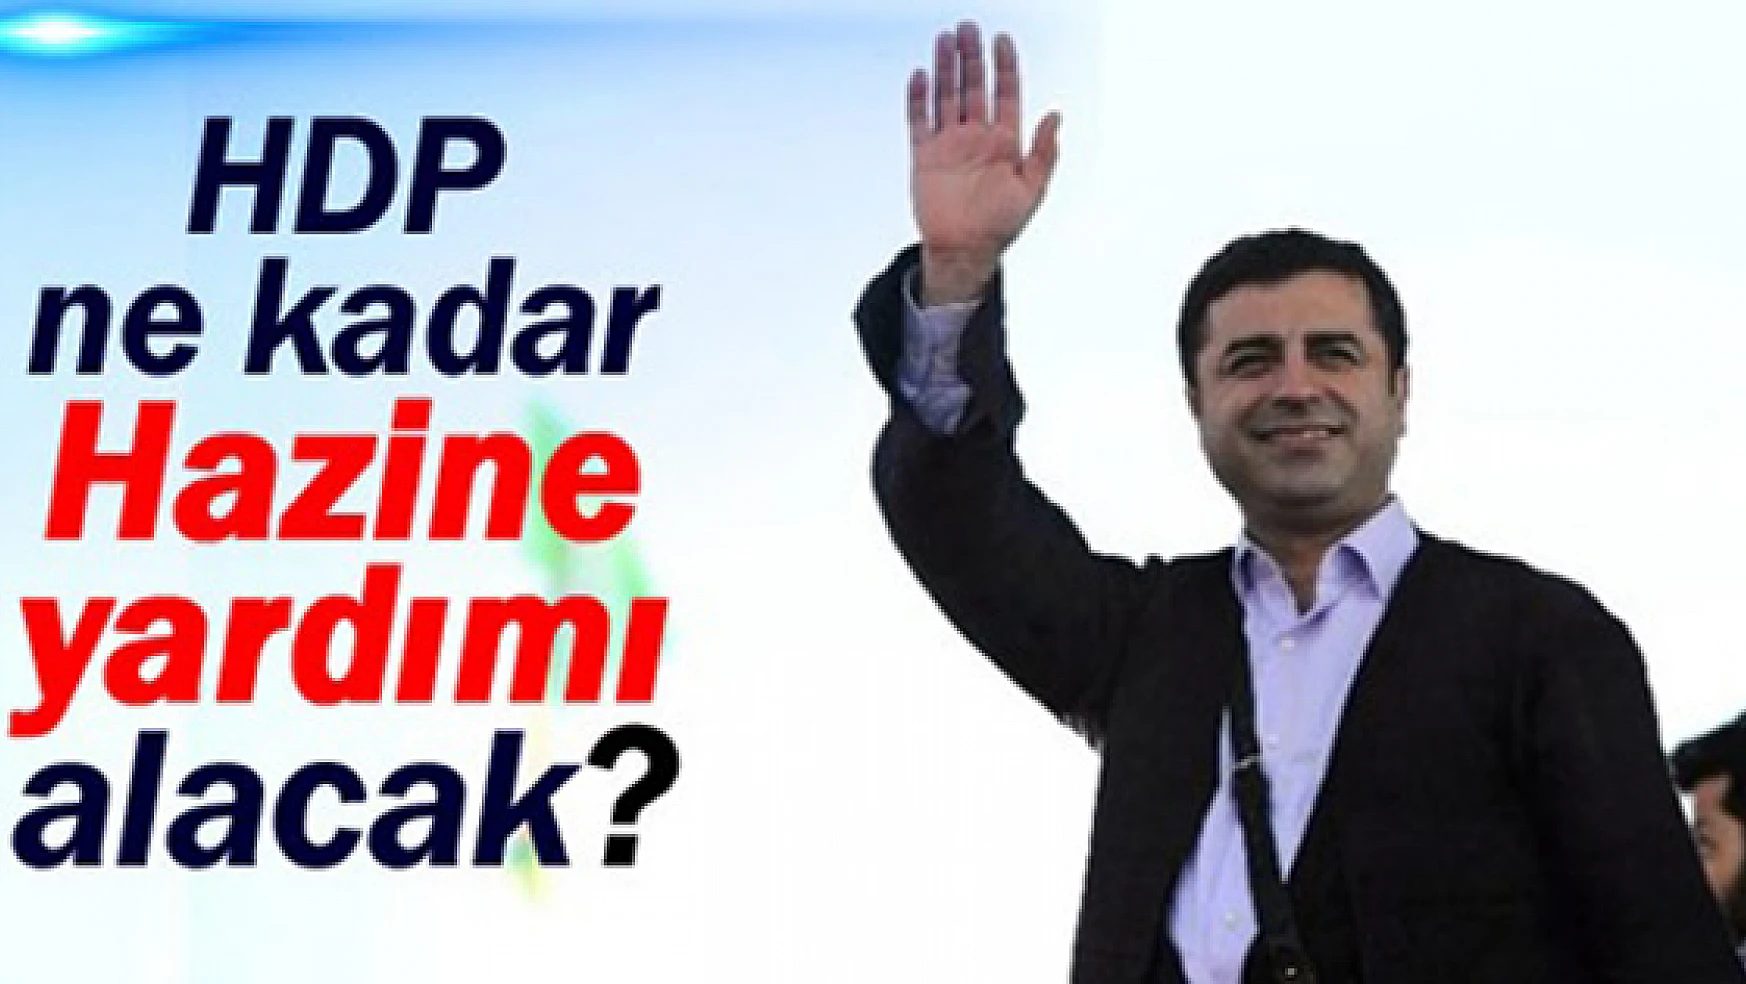 HDP Ne Kadar Hazine Yardımı Alacak?